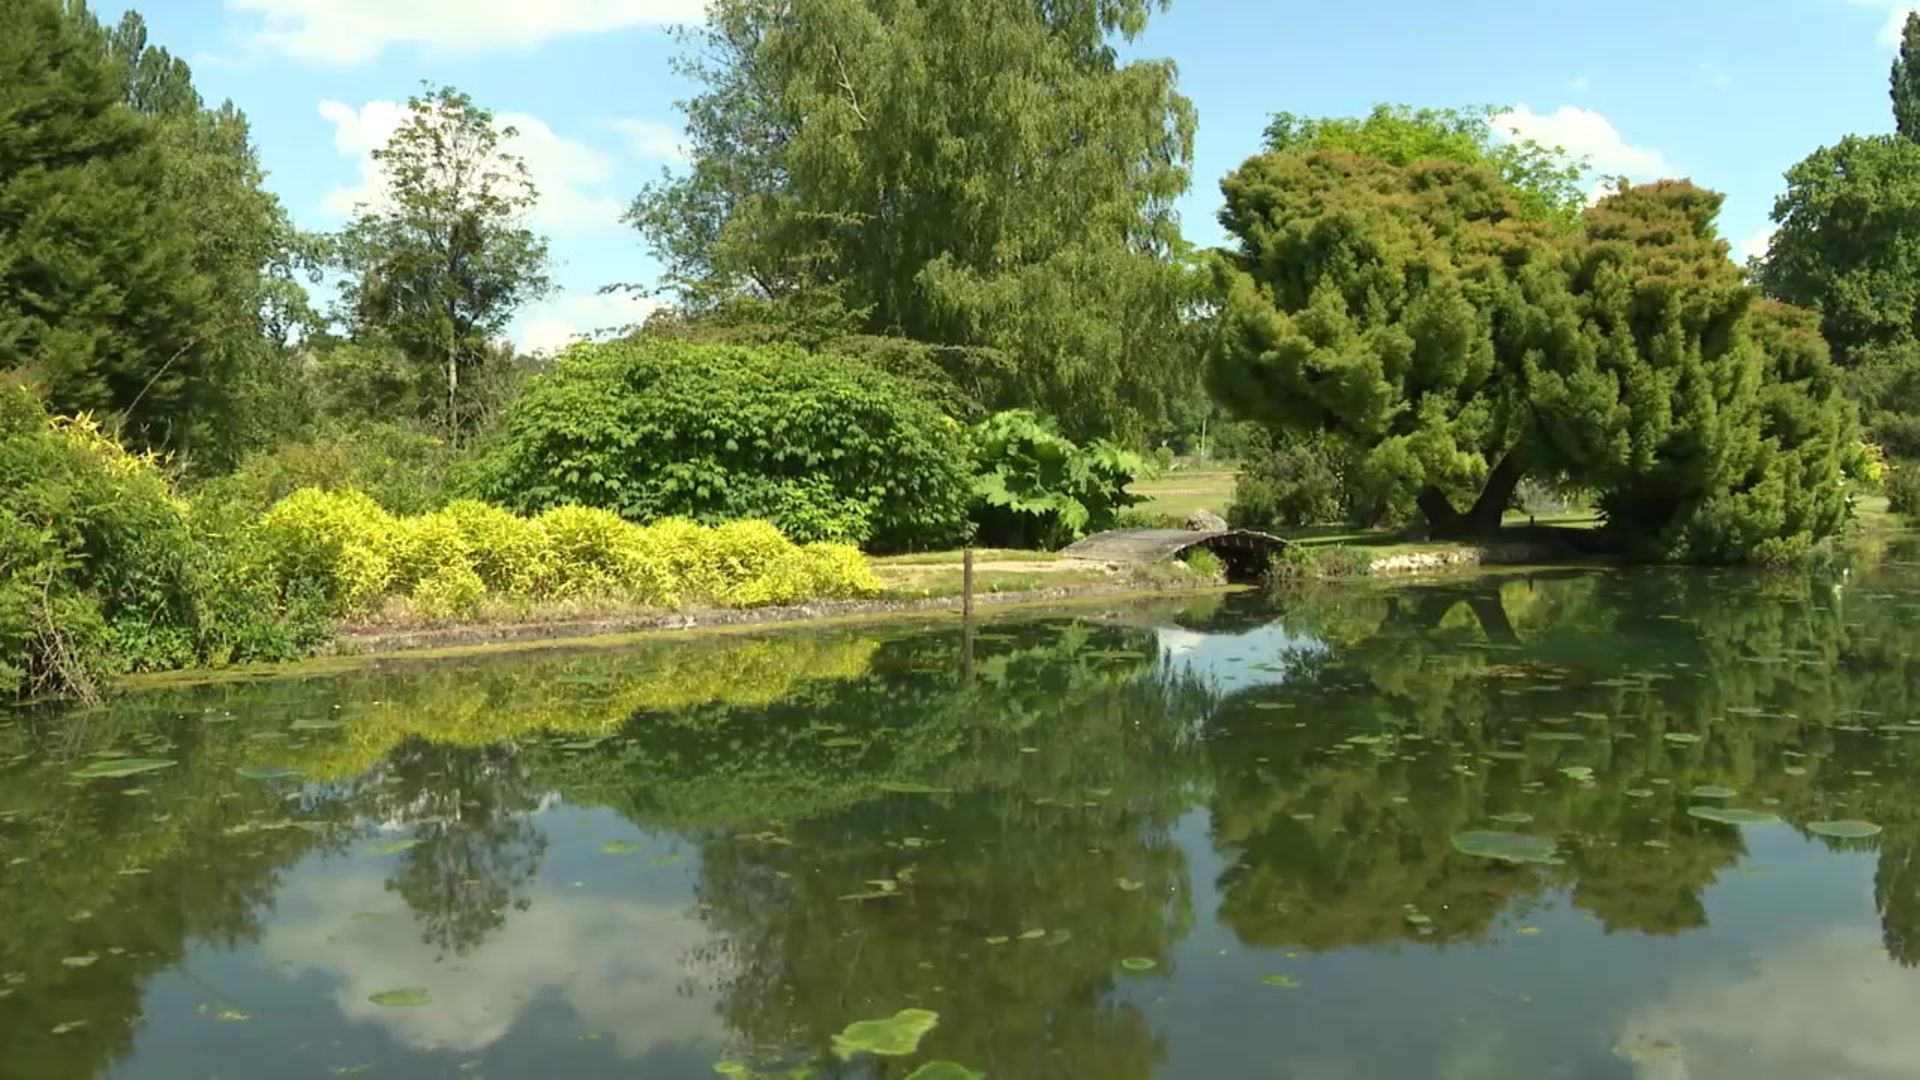 Le jardin du Plessis Sasnières, un jardin remarquable dans le Loir et Cher